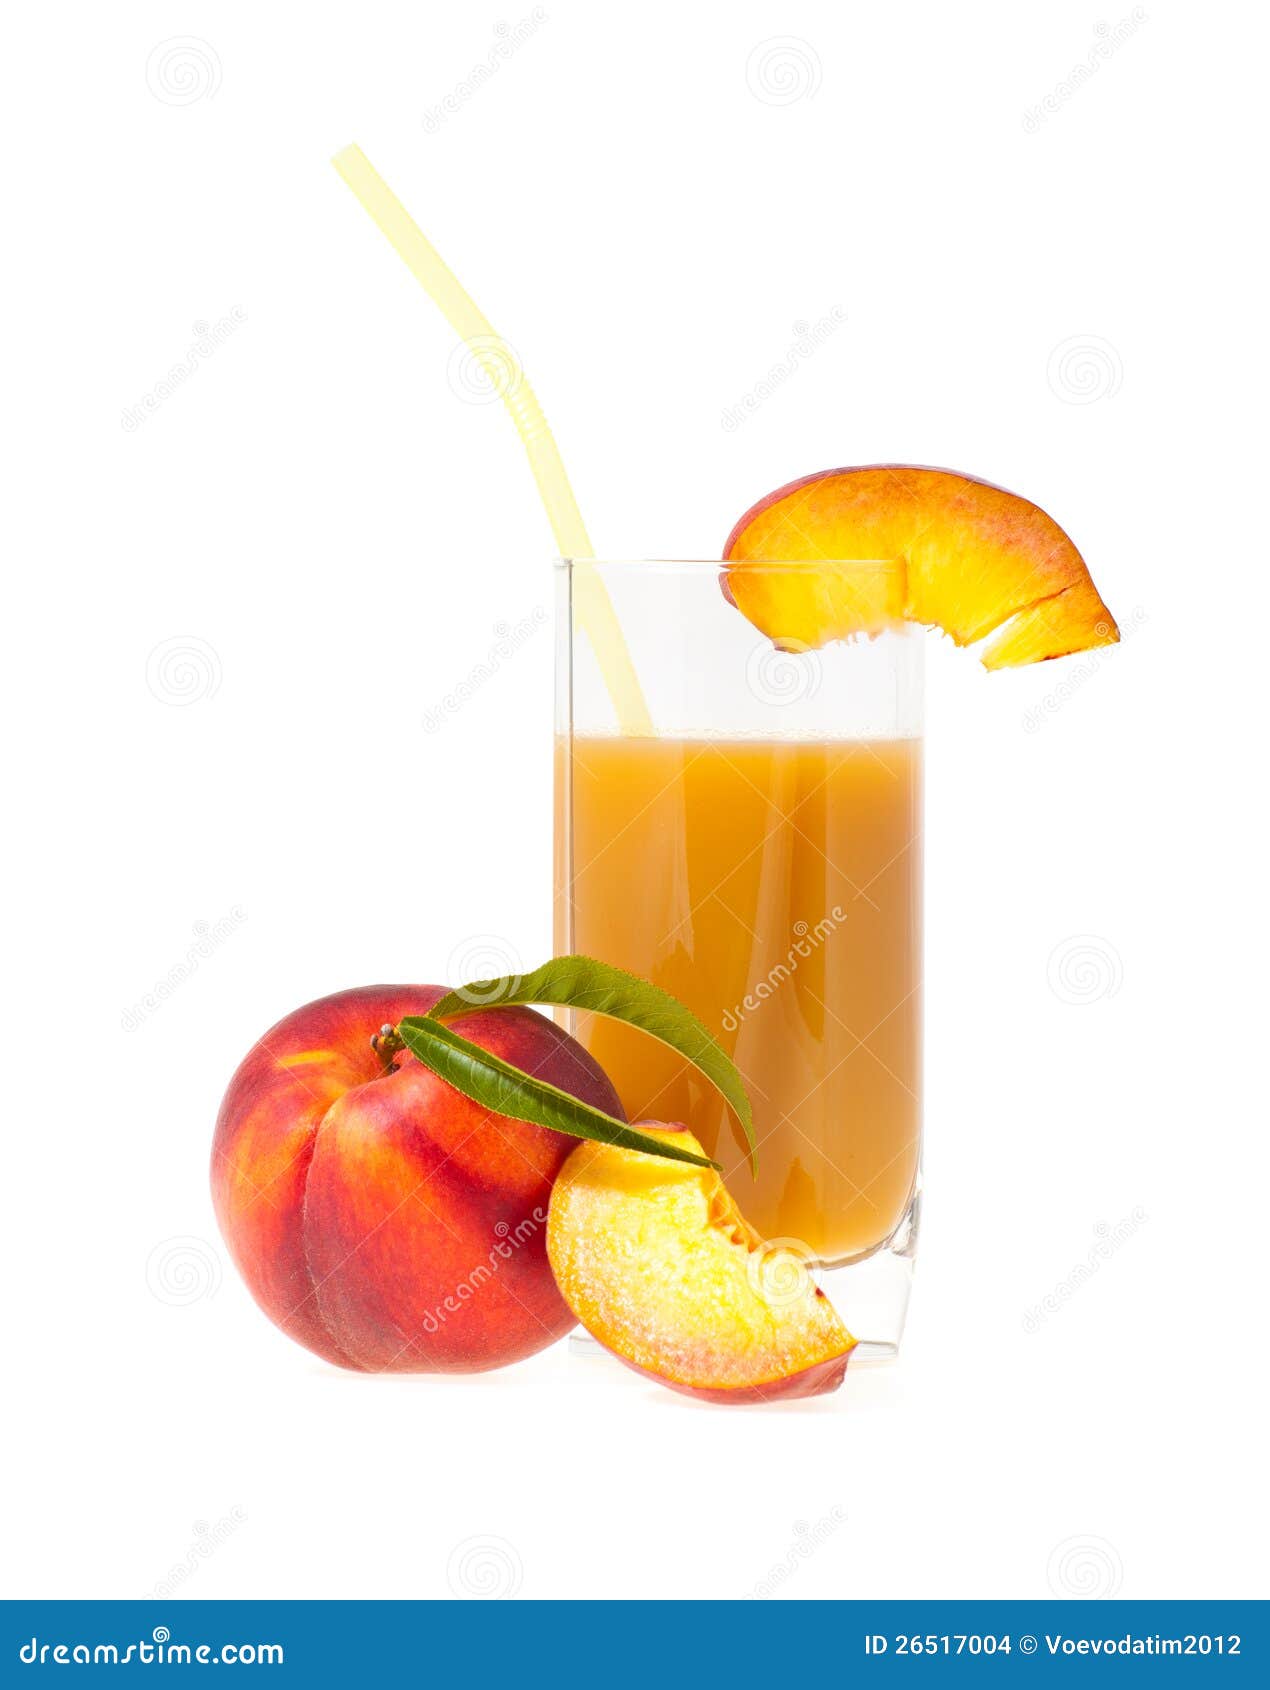 美汁源汁汁桃桃×王一博：桃桃美味，满满美好 - 数英